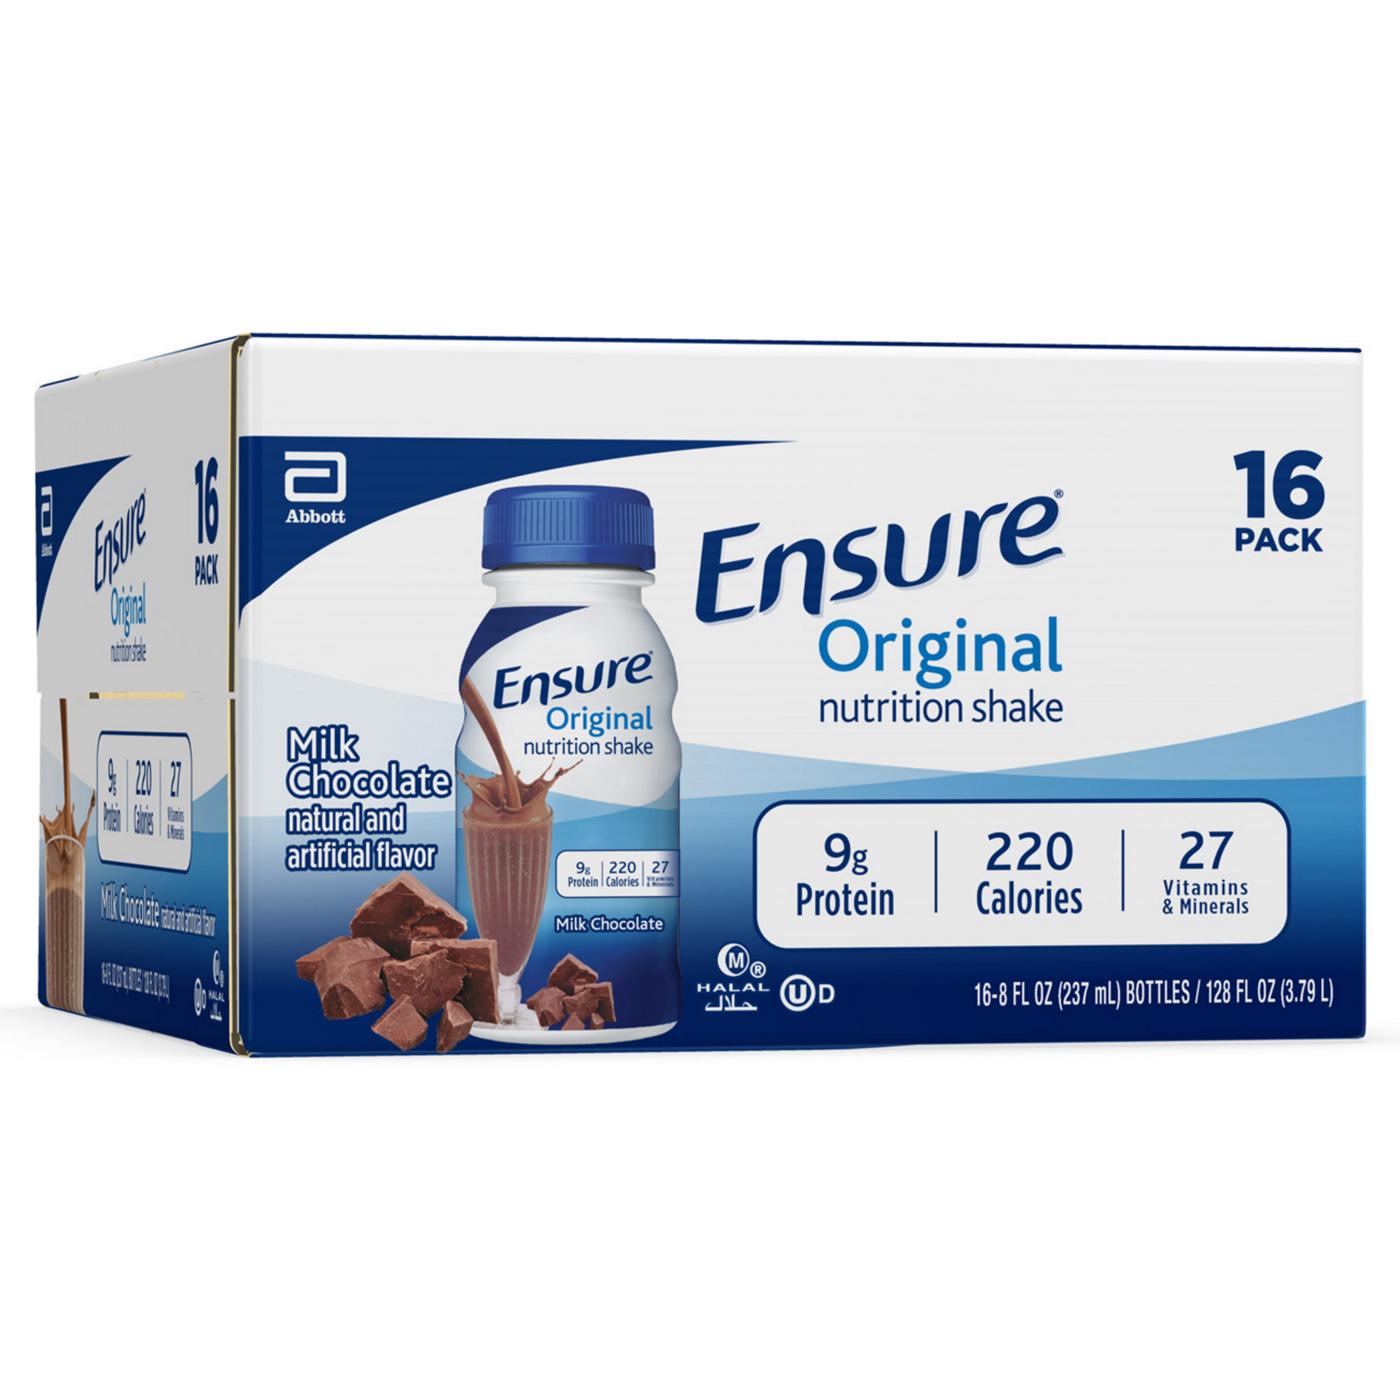 Ensure Original Nutrition Shake - Milk Chocolate; image 10 of 10